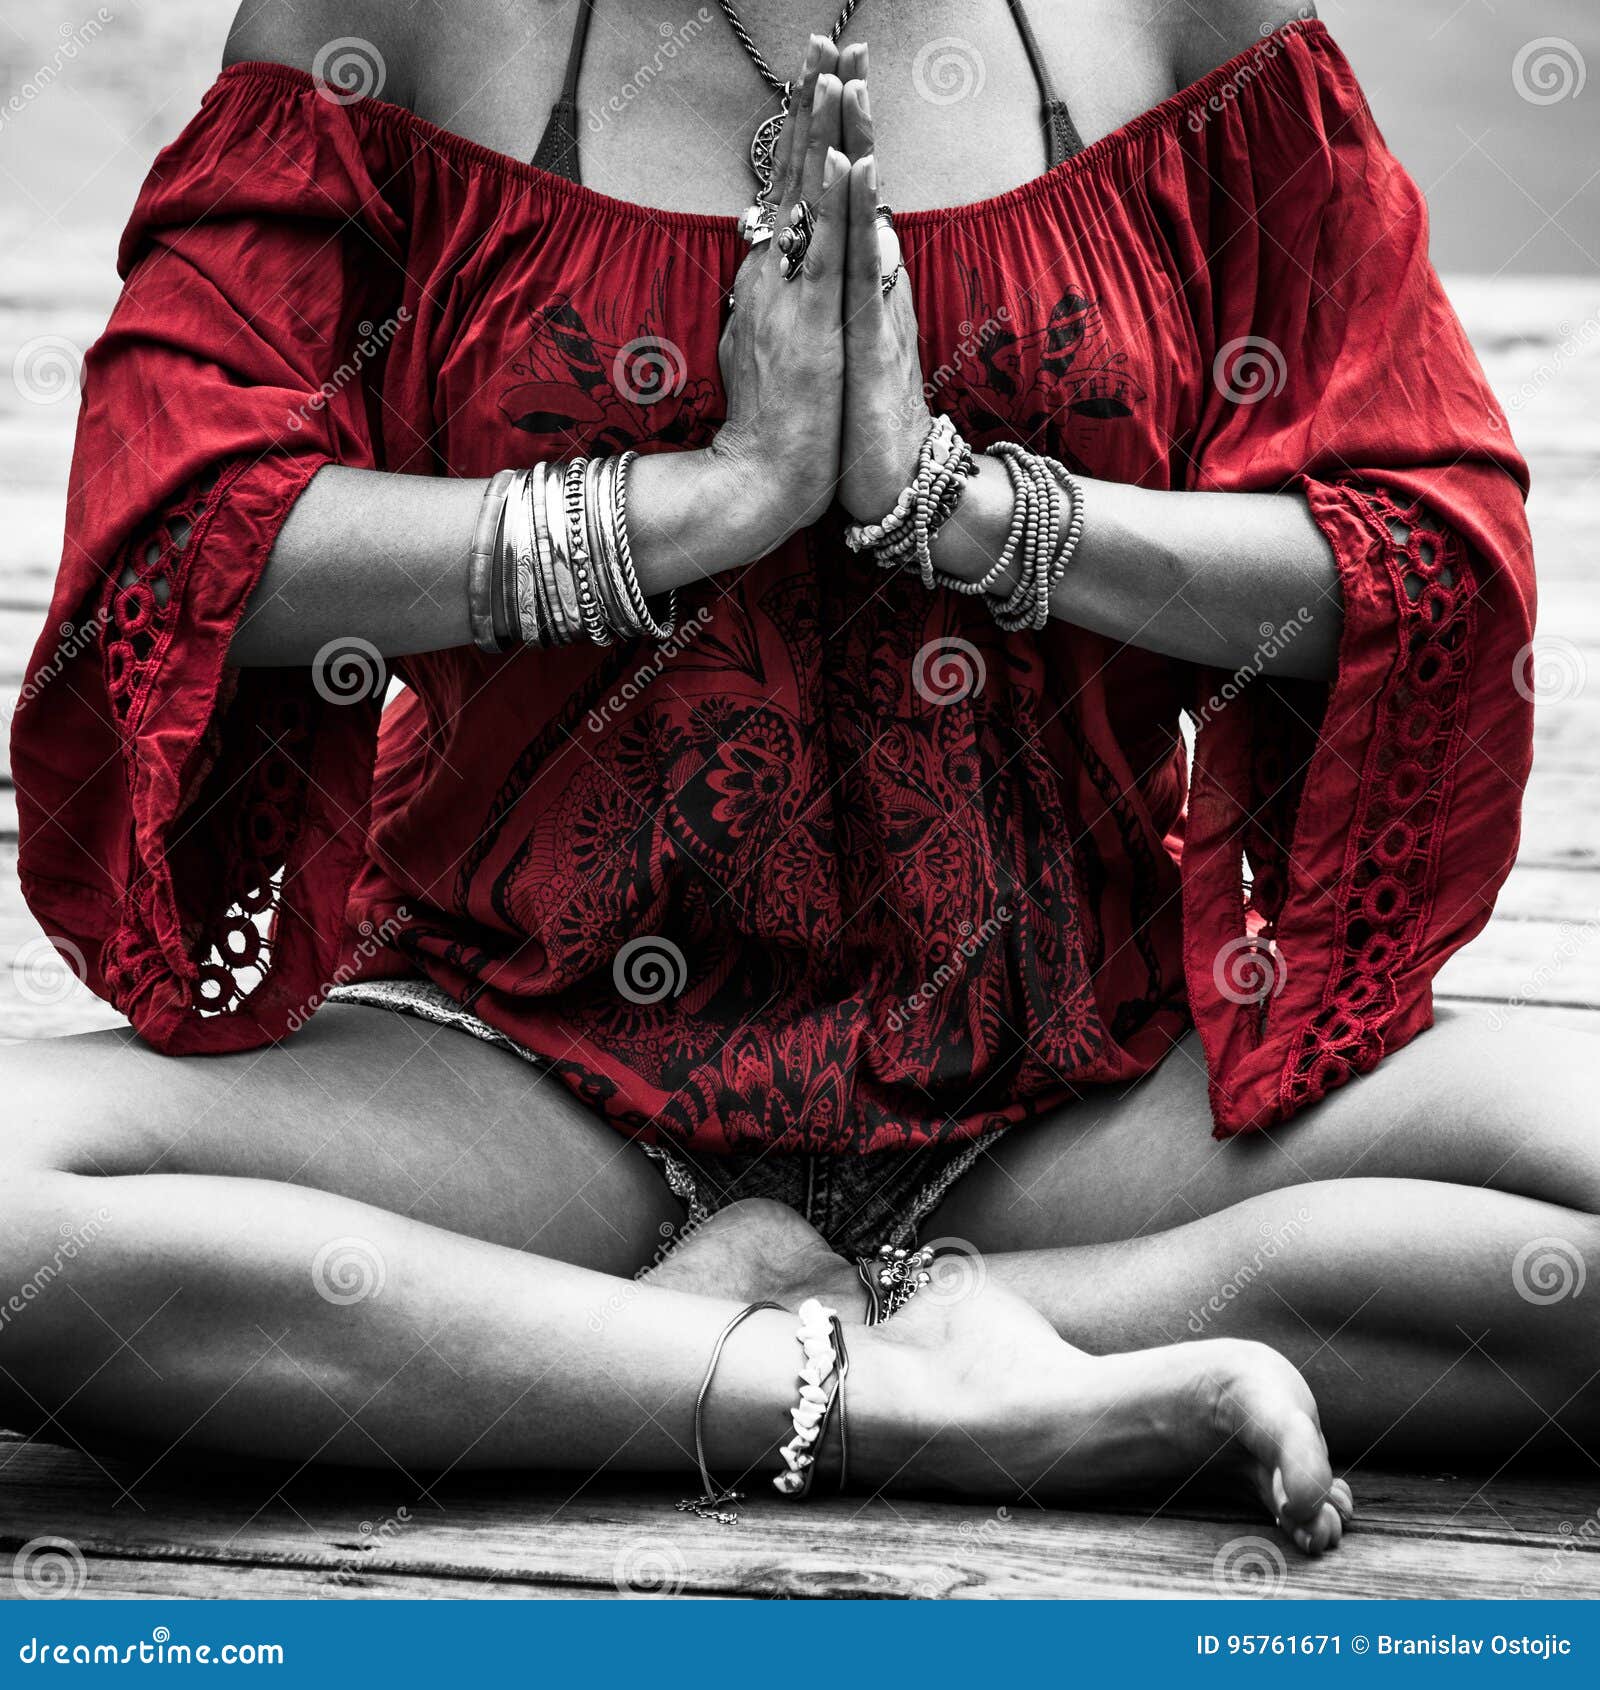 woman hands in yoga ic gesture mudra